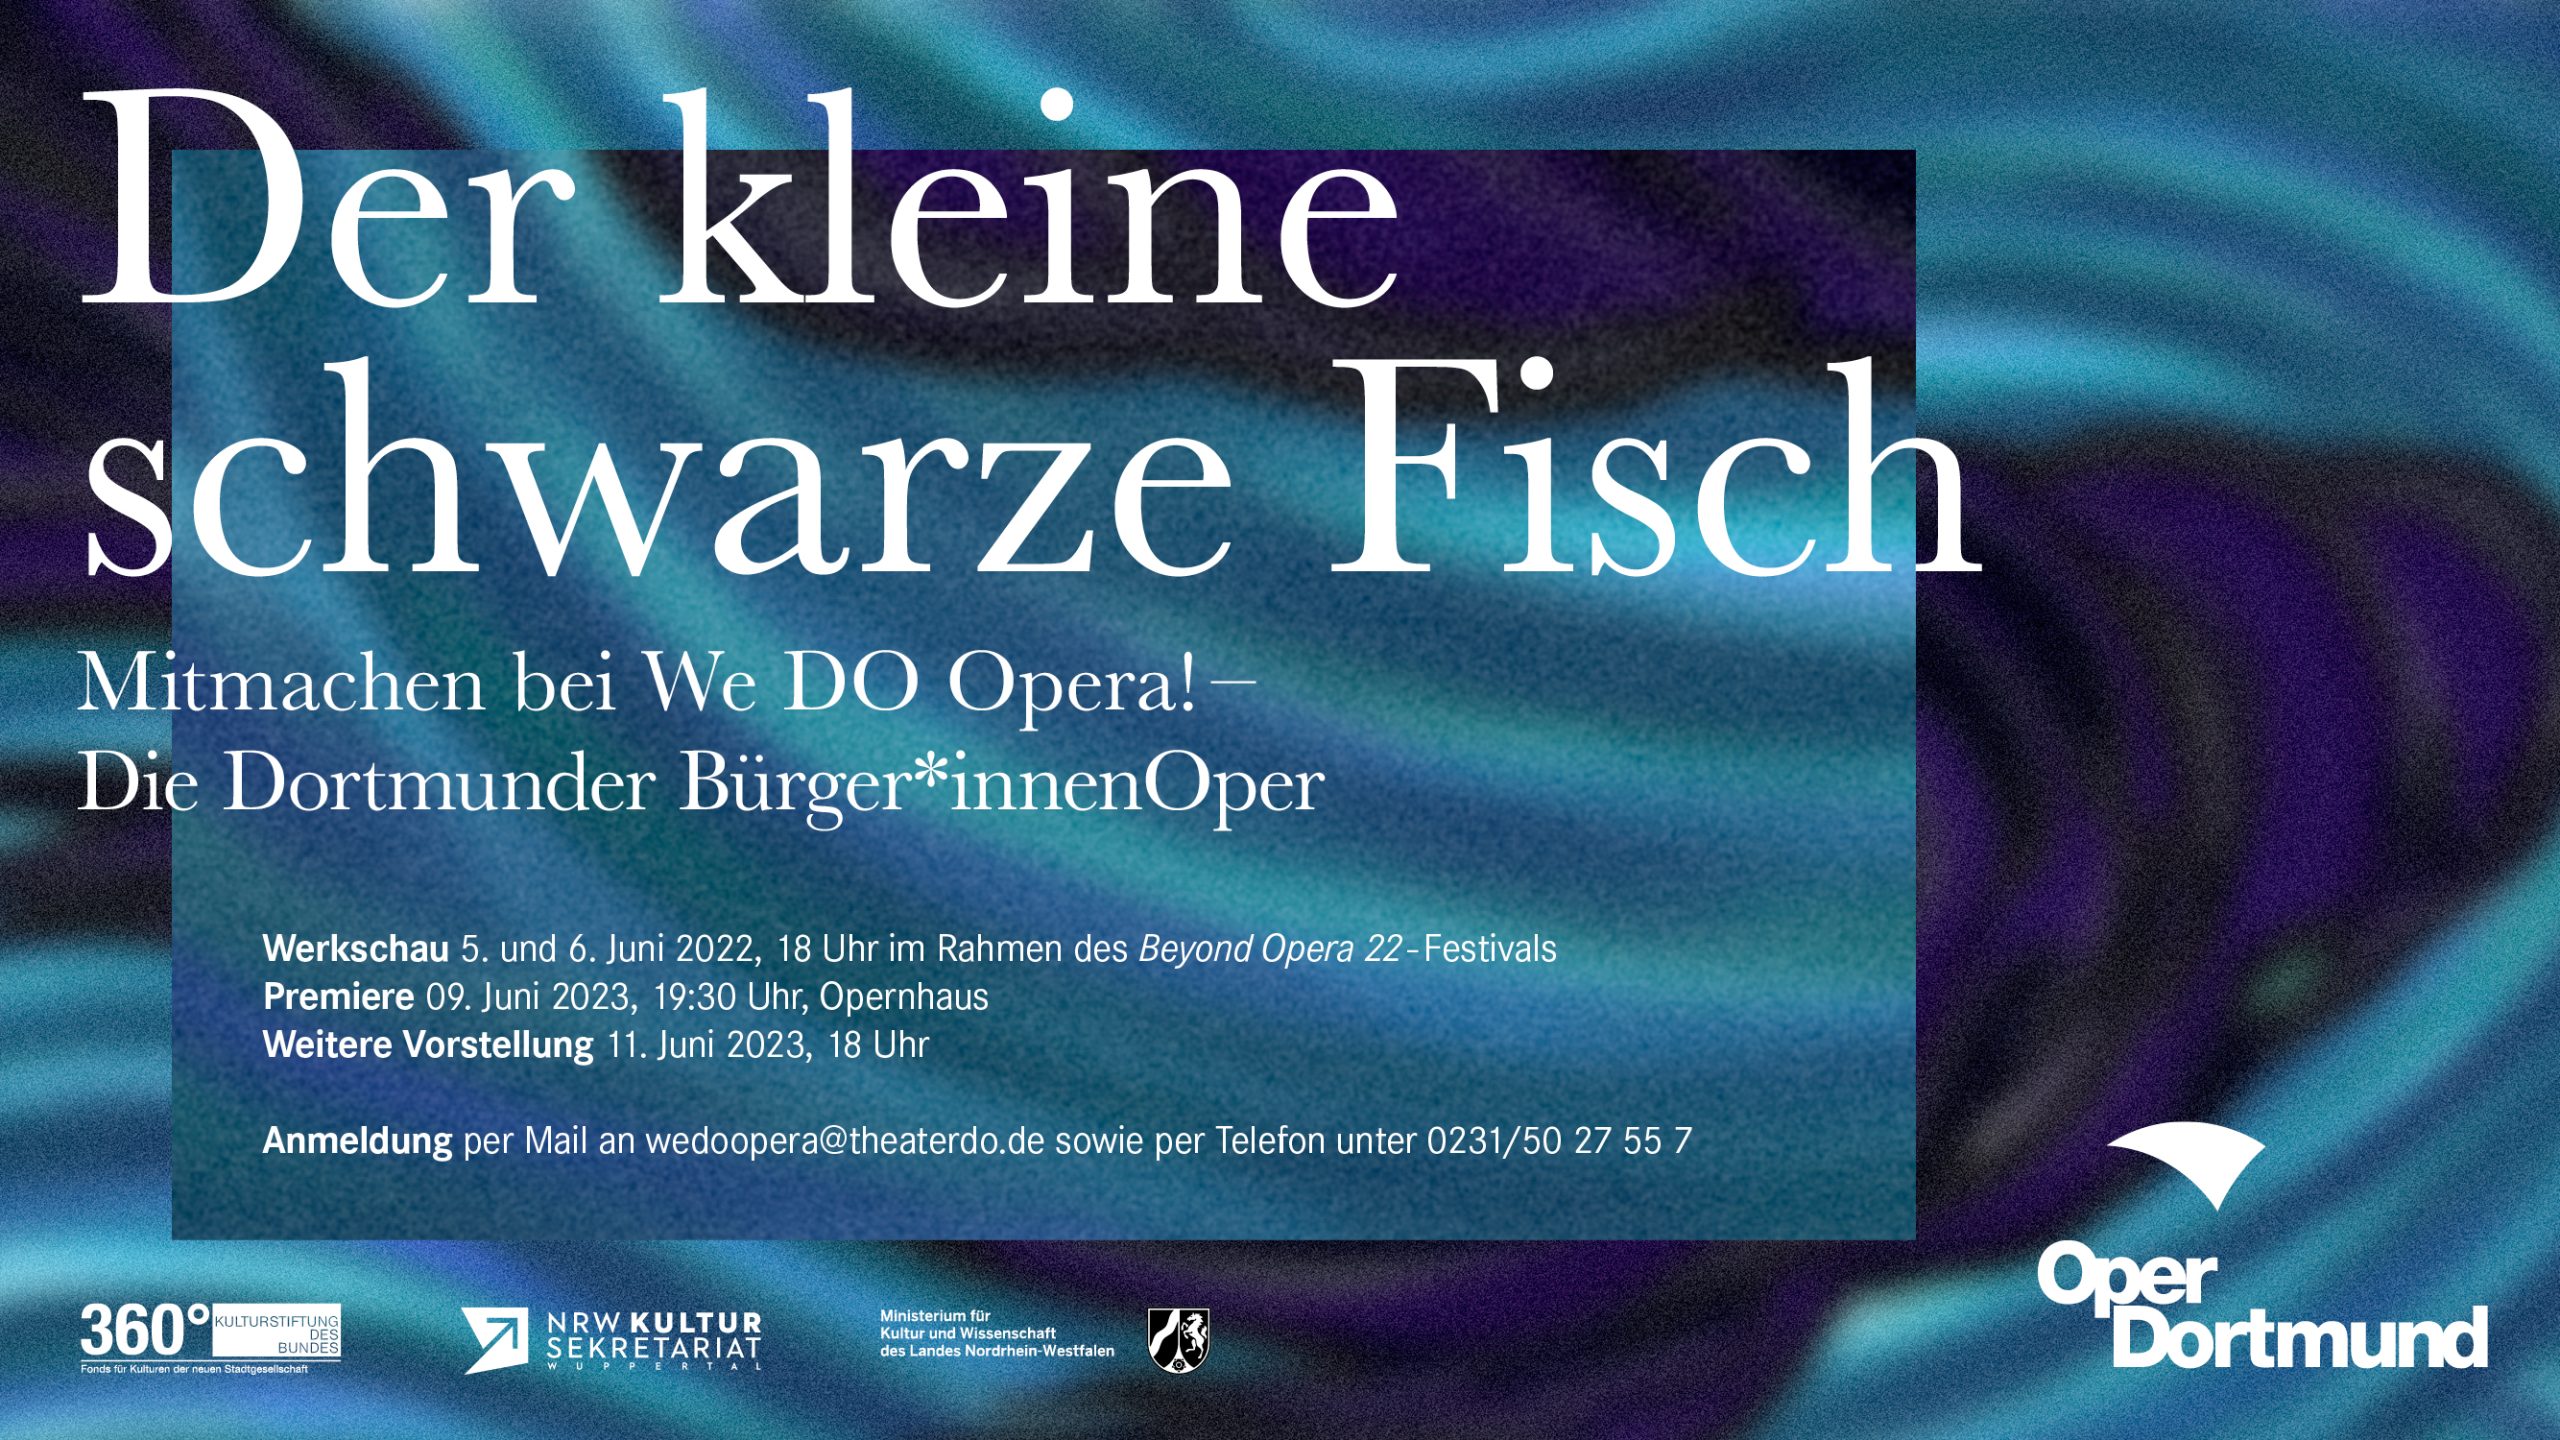 We DO Opera! – Der kleine schwarze Fisch